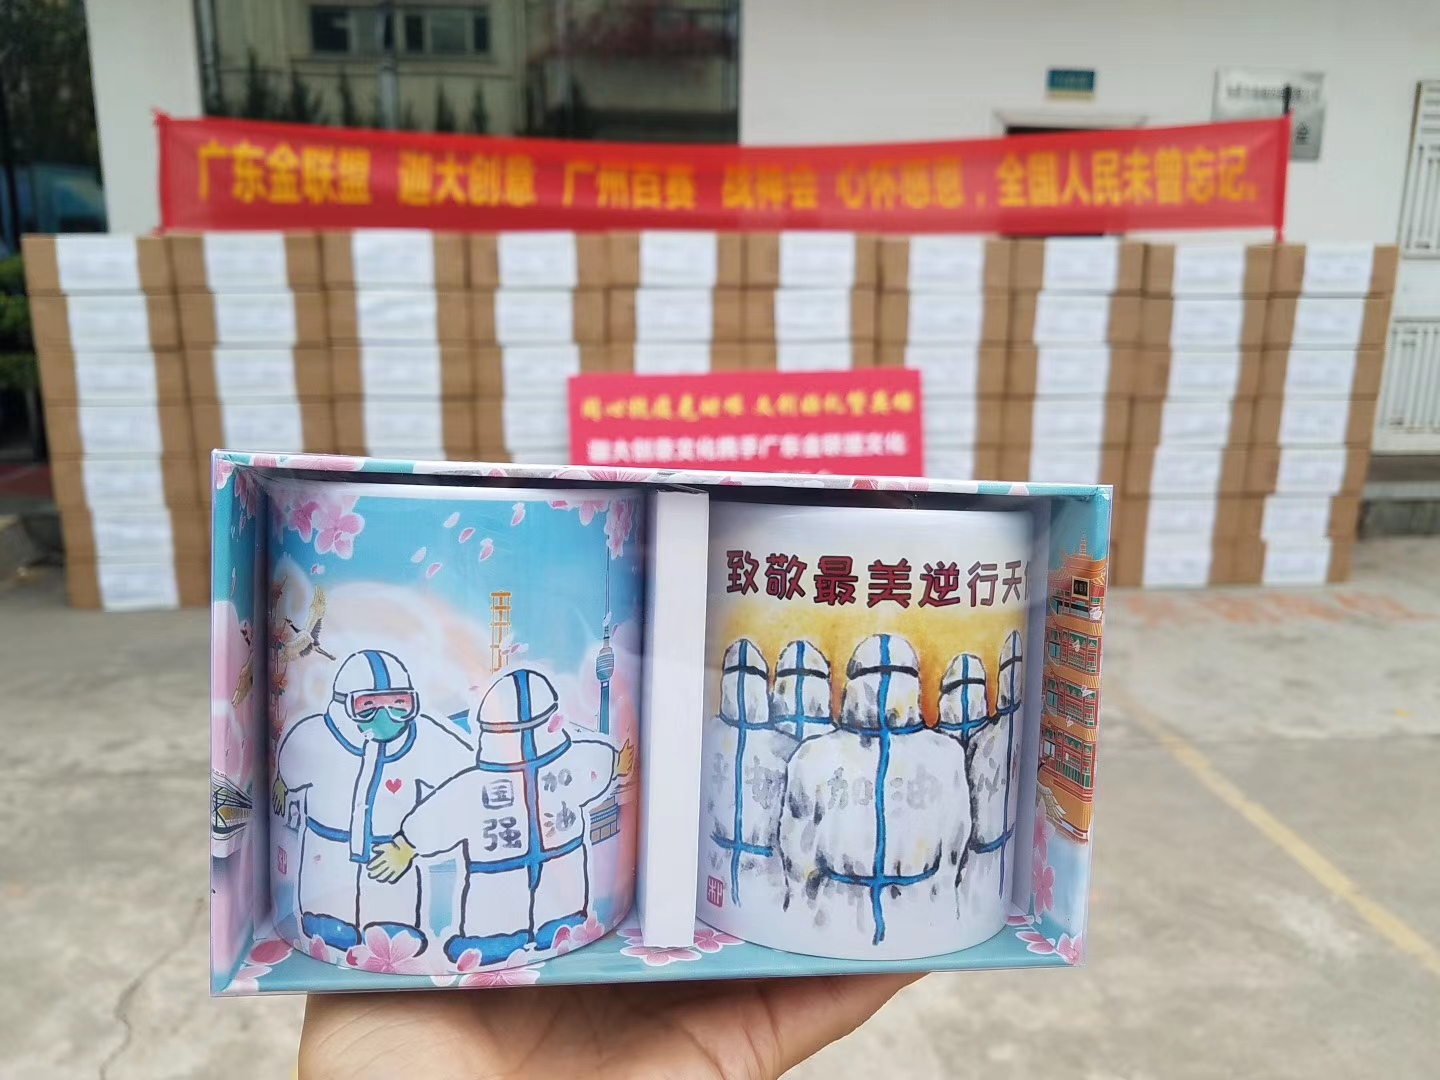 迦大文创联合兄弟公司向武汉一线医护人员捐赠4500套抗疫纪念马克杯